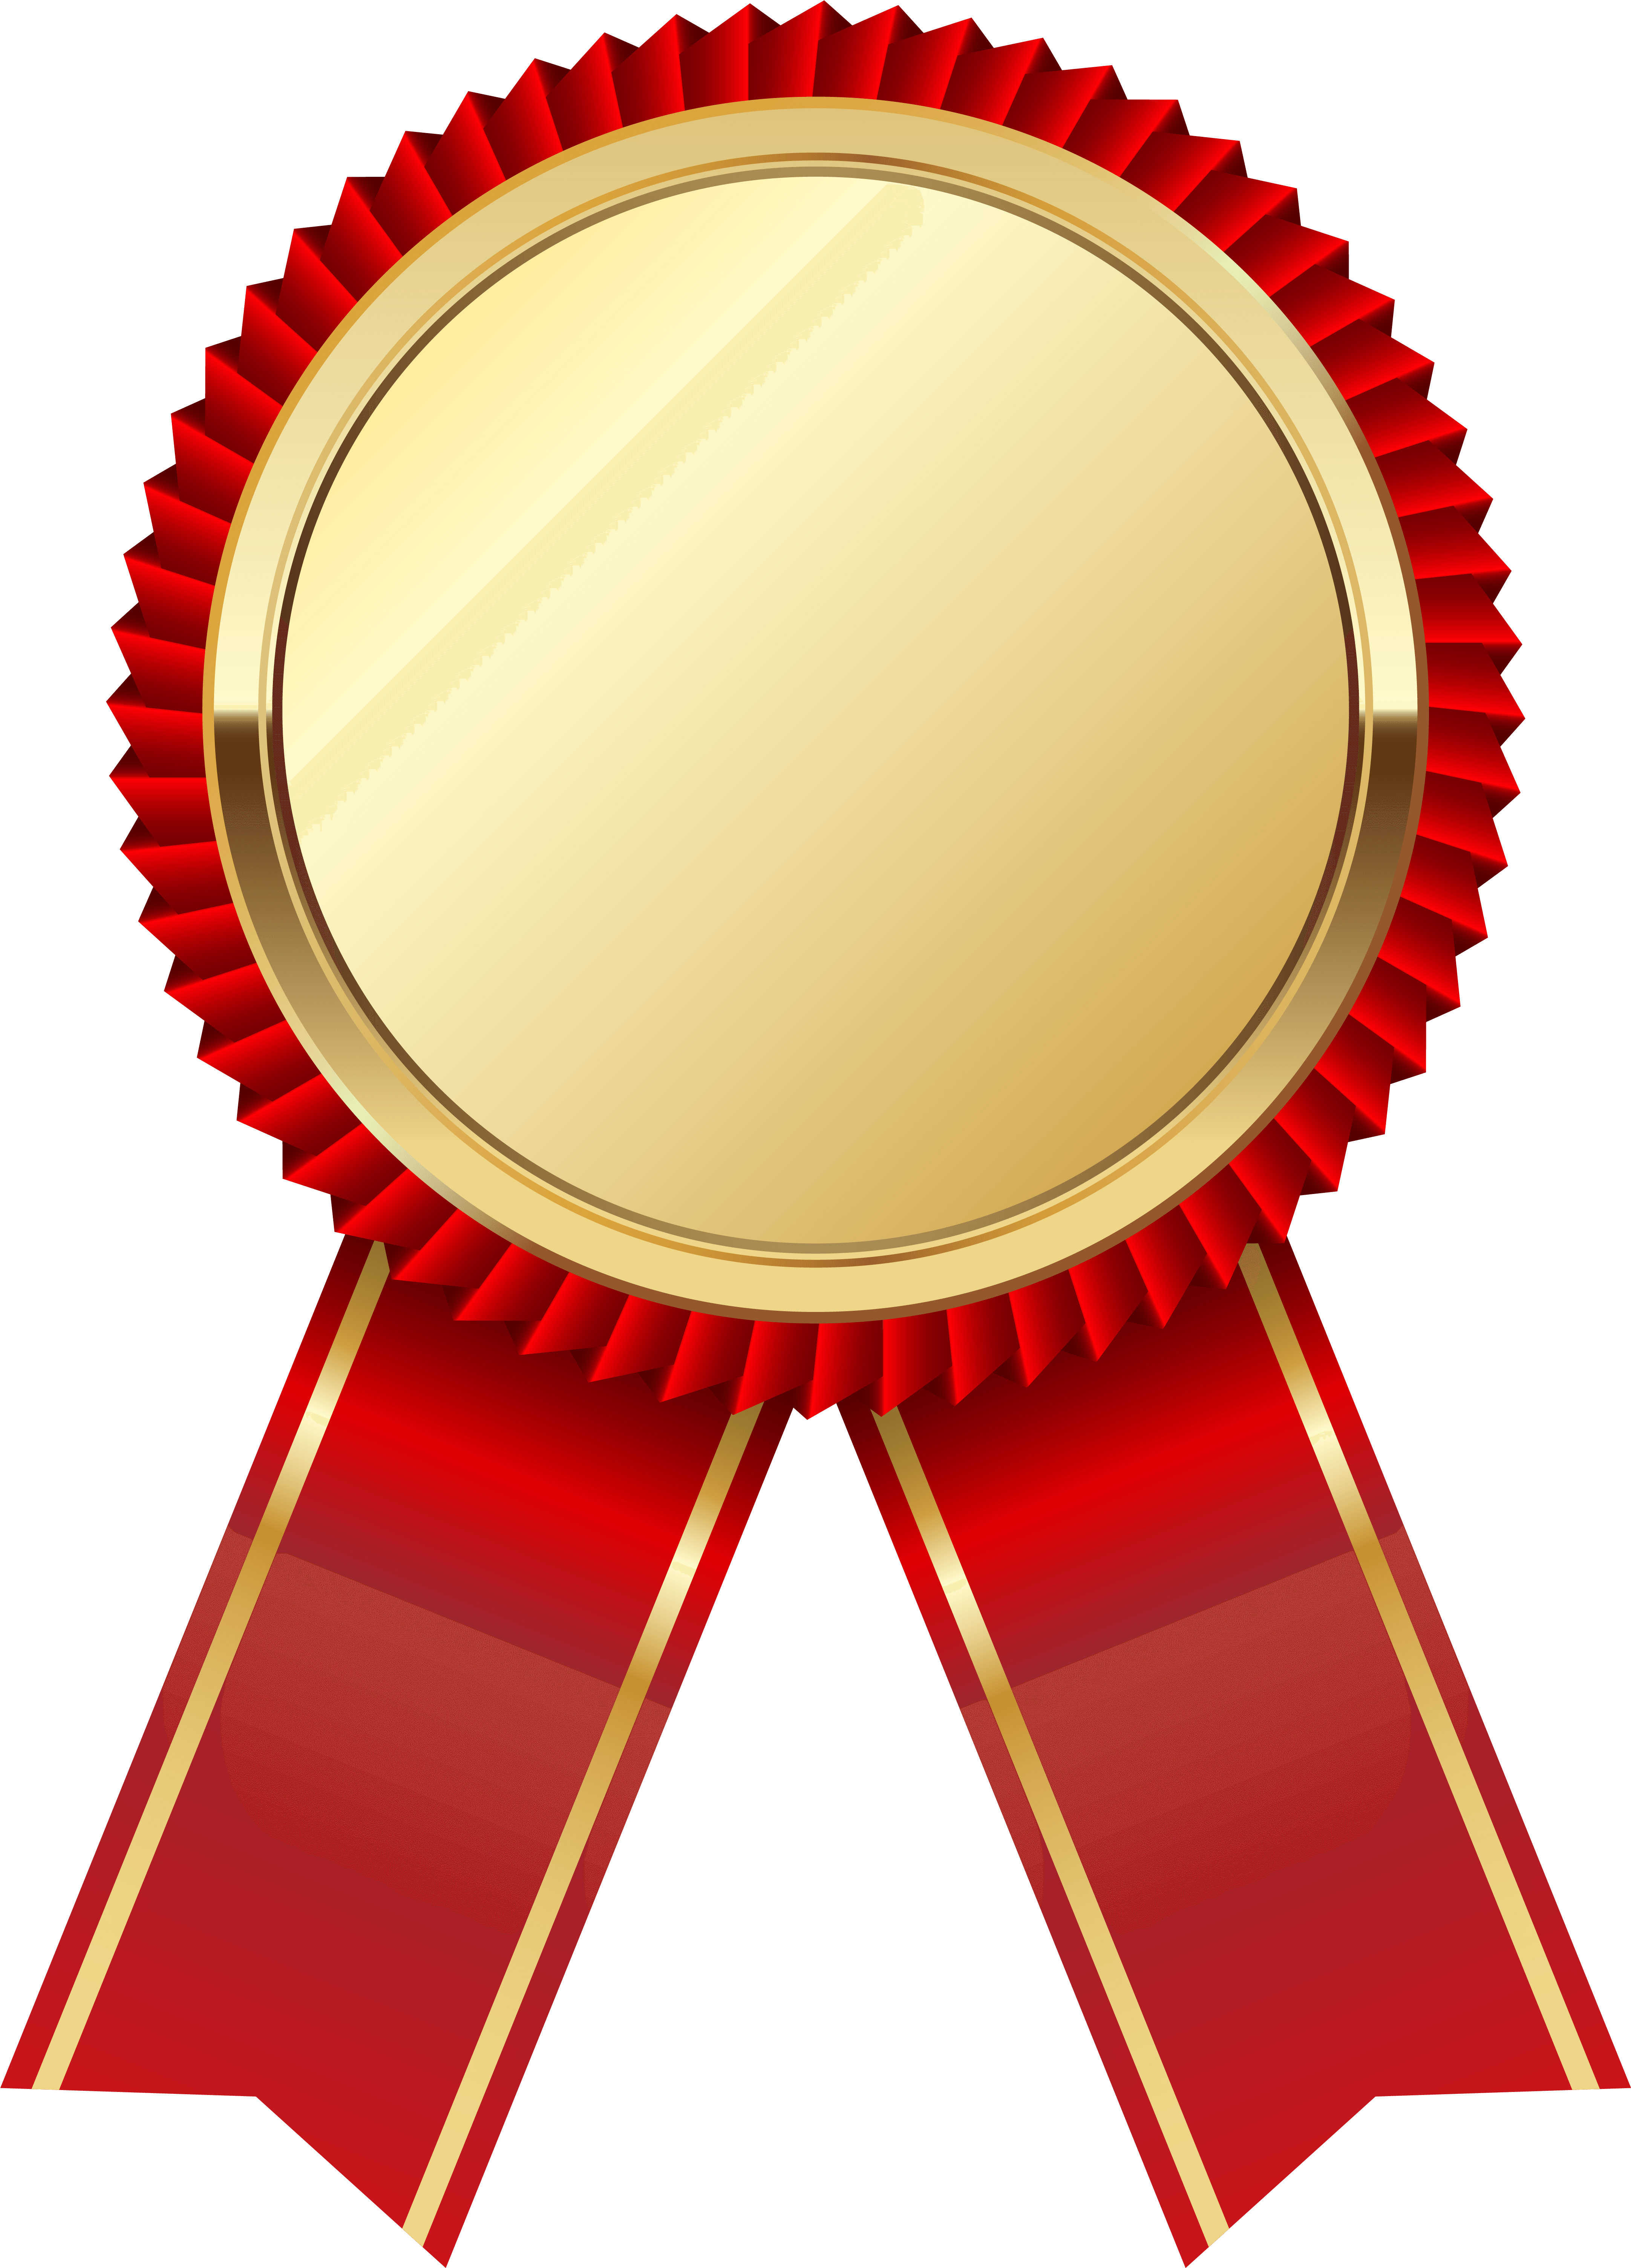 Award Winning Medal - Medal Clip Art (4420x6145)